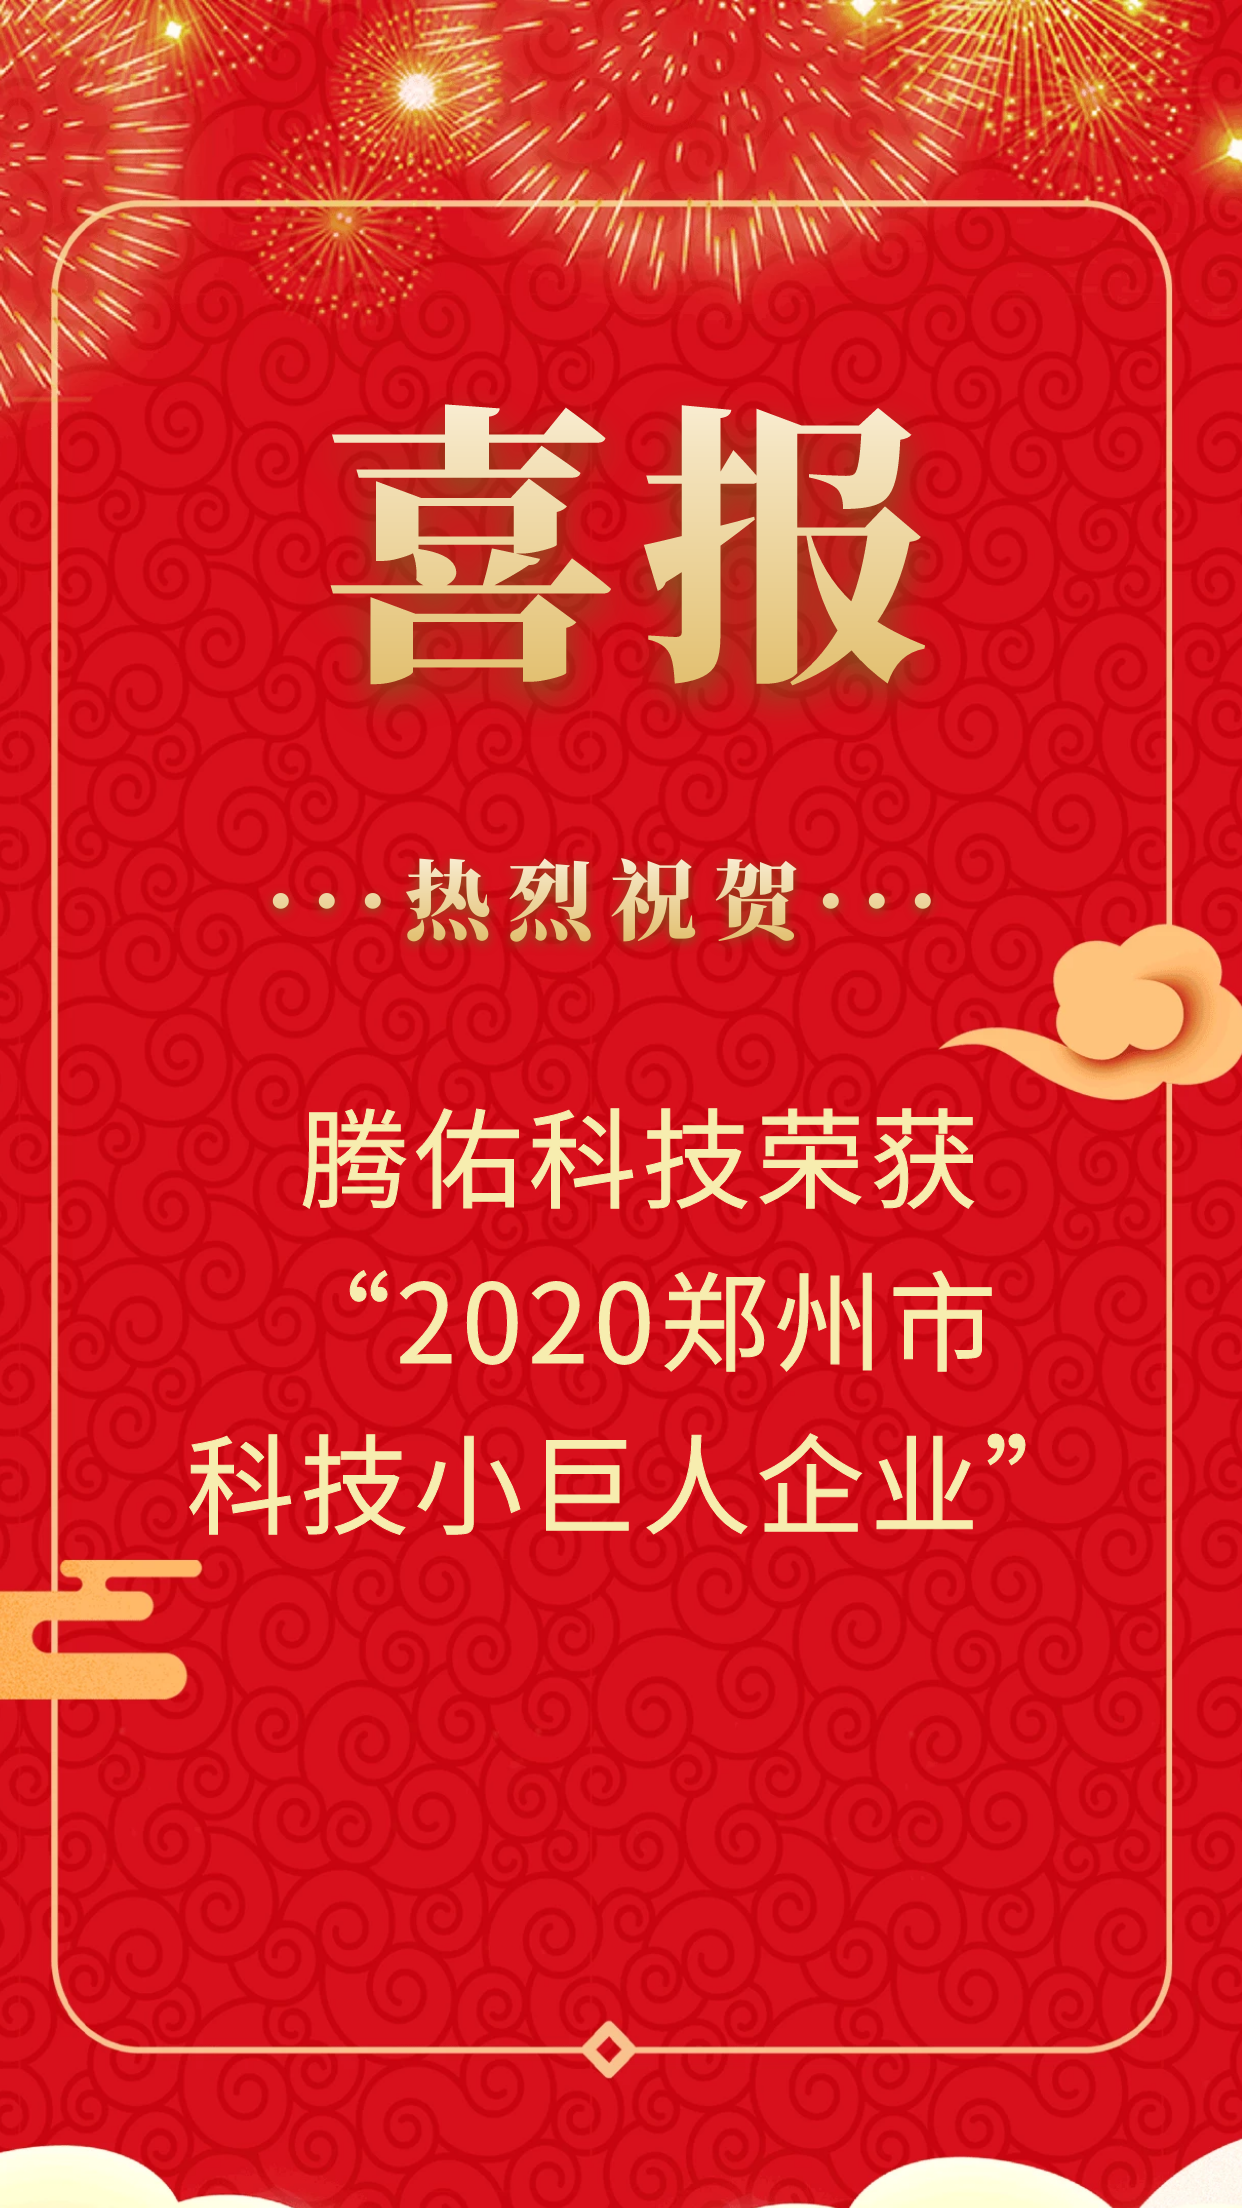 【喜报】恭喜腾佑科技荣获2020年郑州市“科技小巨人企业”认定